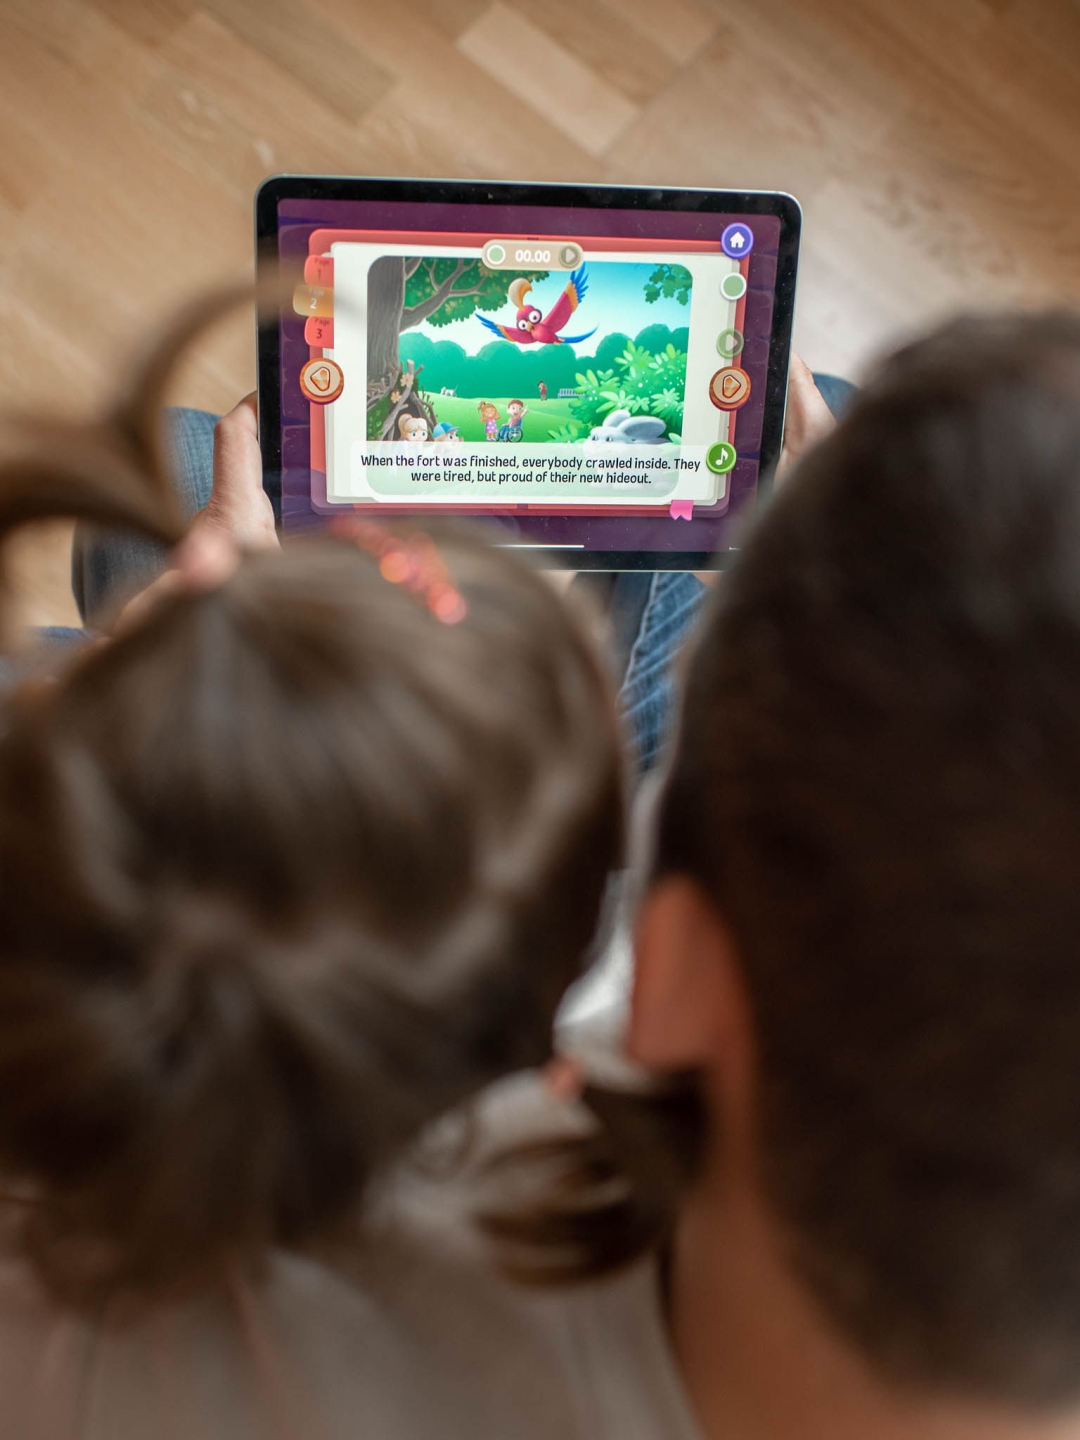 Sjajna hrvatska aplikacija olakšat će život roditeljima i skratiti djeci vrijeme provedeno pred ekranima